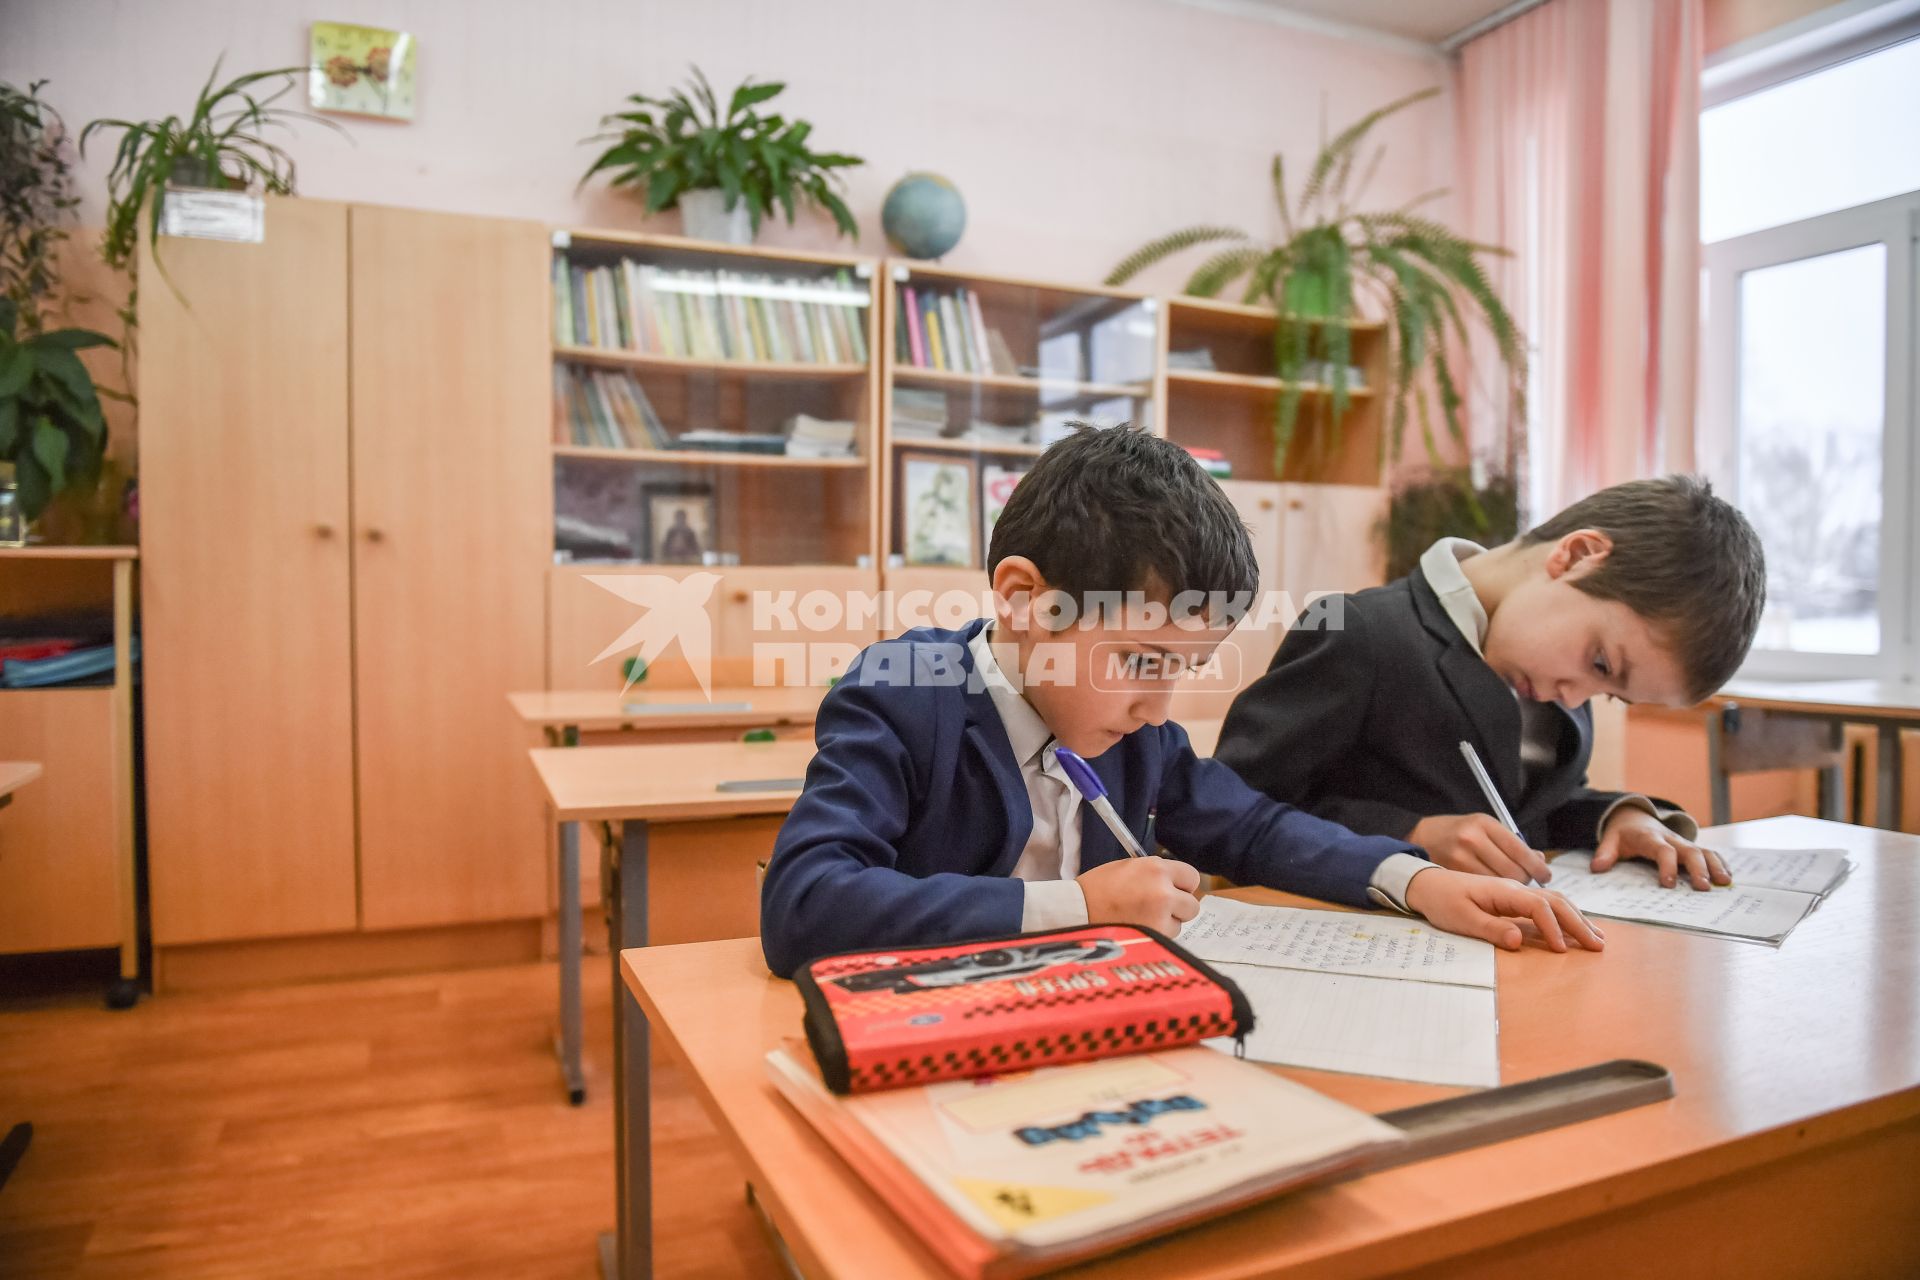 Тверская область, Рождествено. Ученики на занятиях в школе.